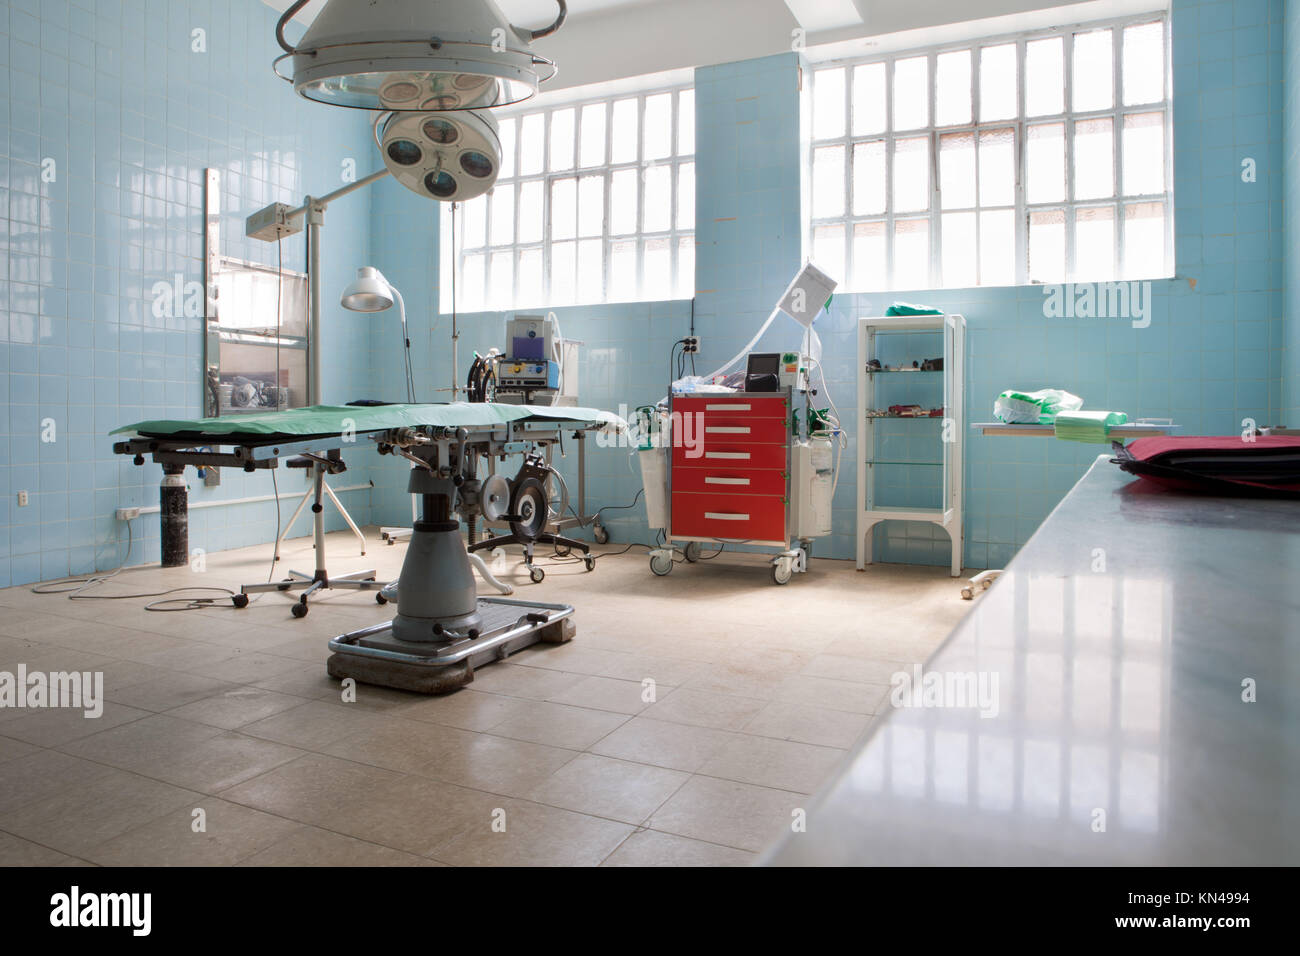 Leeren Operationssaal der eine Stierkampfarena. Stierkämpfer verwendet durch den Stier verletzt zu werden, so dass die chirurgischen Operation Zimmer die Stierkampfarena gehören. Stockfoto